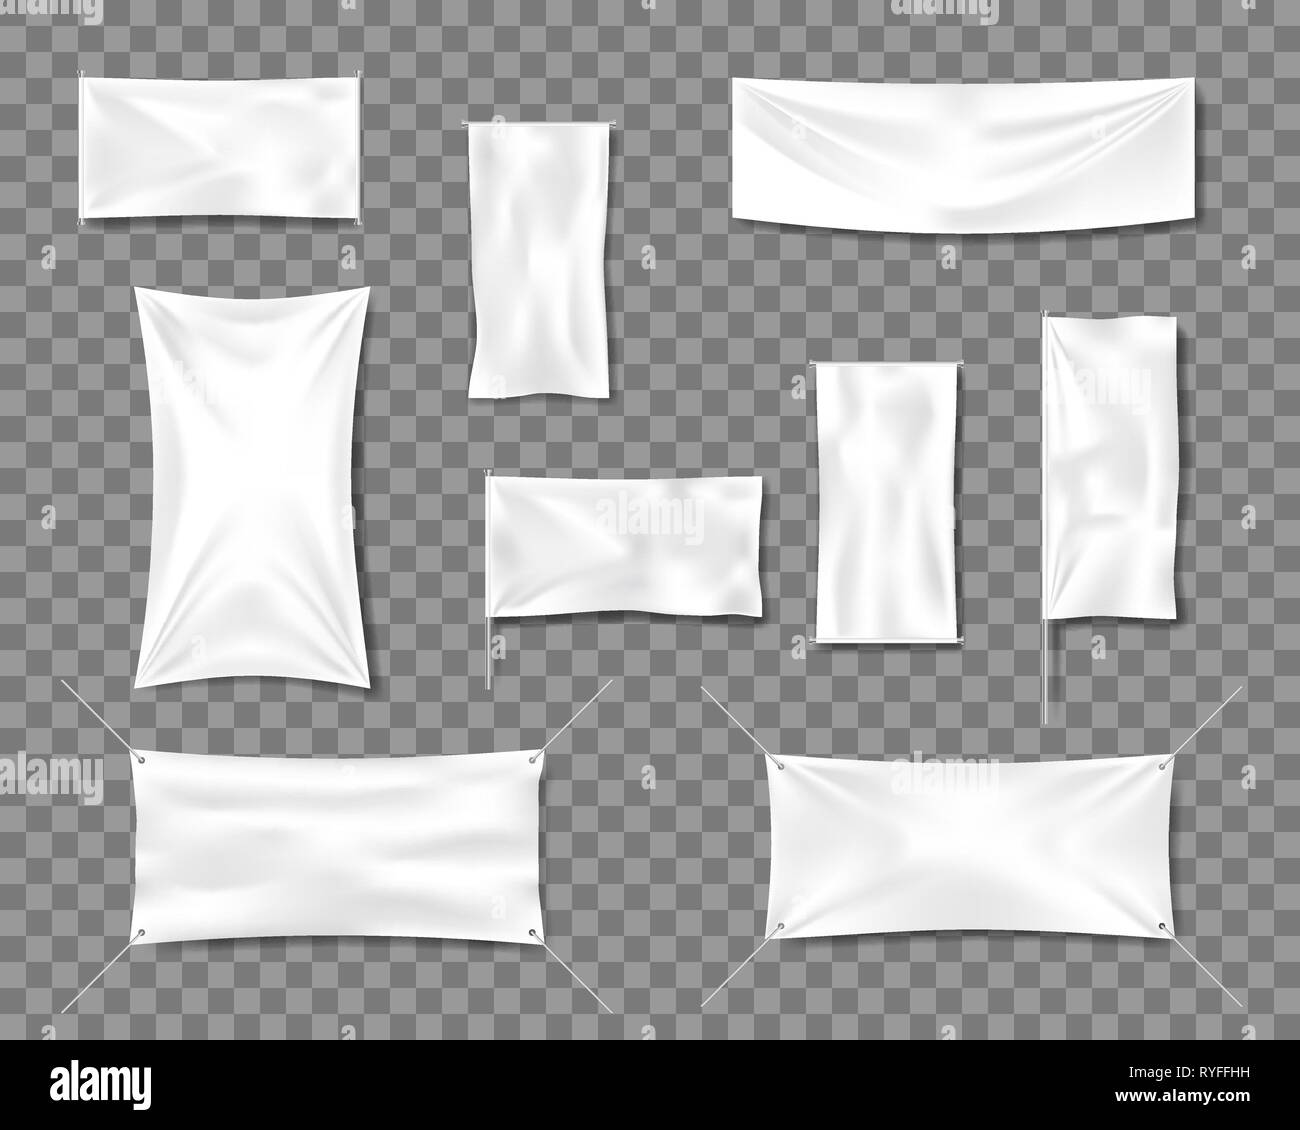 Baumwolle Weiß leer glatte Flagge Poster oder Plakat Vorlagen eingestellt. 3d Detaillierte Stoff blank Textile Banner für Werbung mit Falten. Vektor Stock Vektor